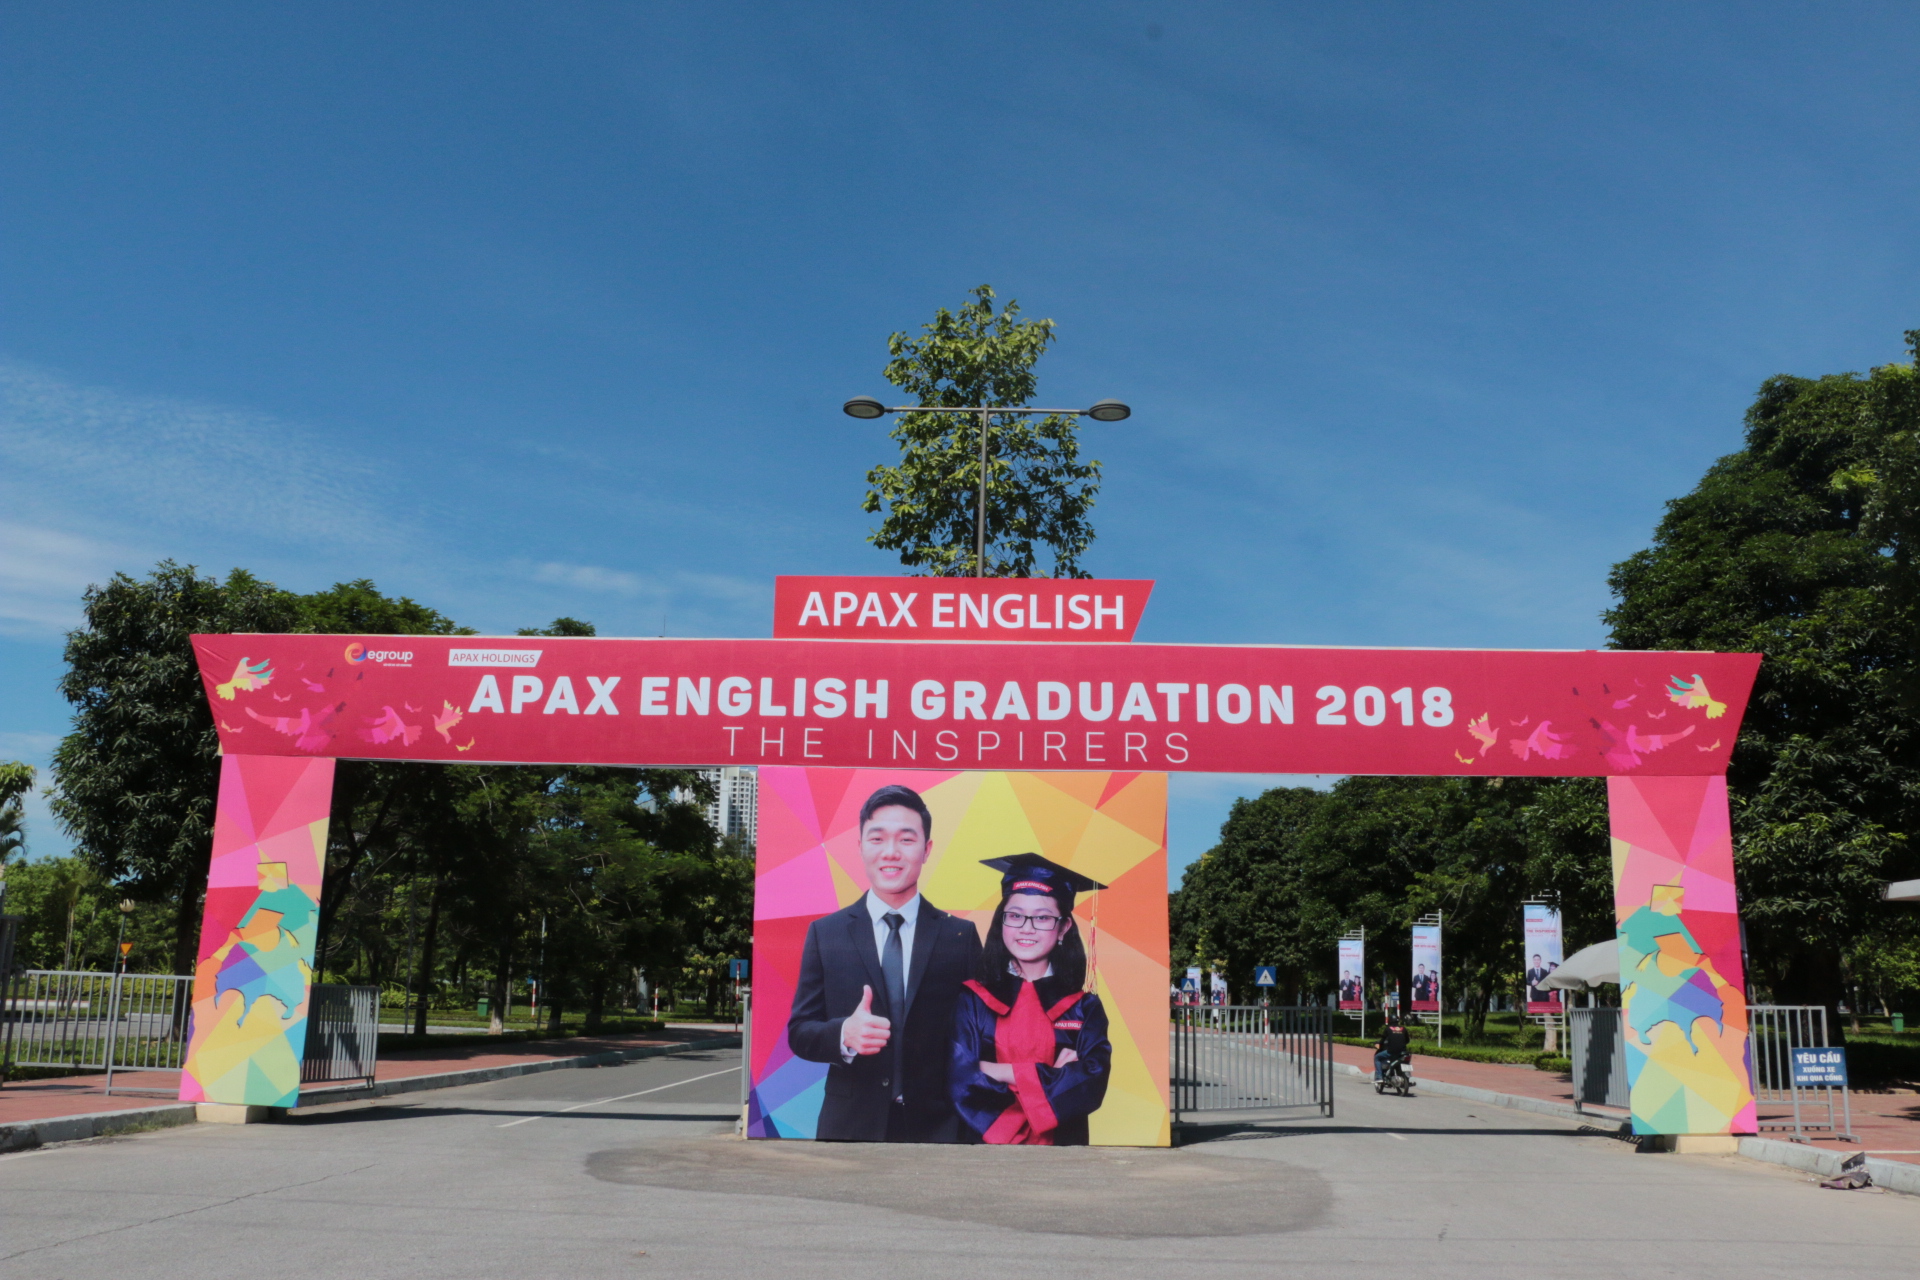 Lễ tốt nghiệp Apax English 2018 được tổ chức tại Trung tâm Hội nghị Quốc gia.